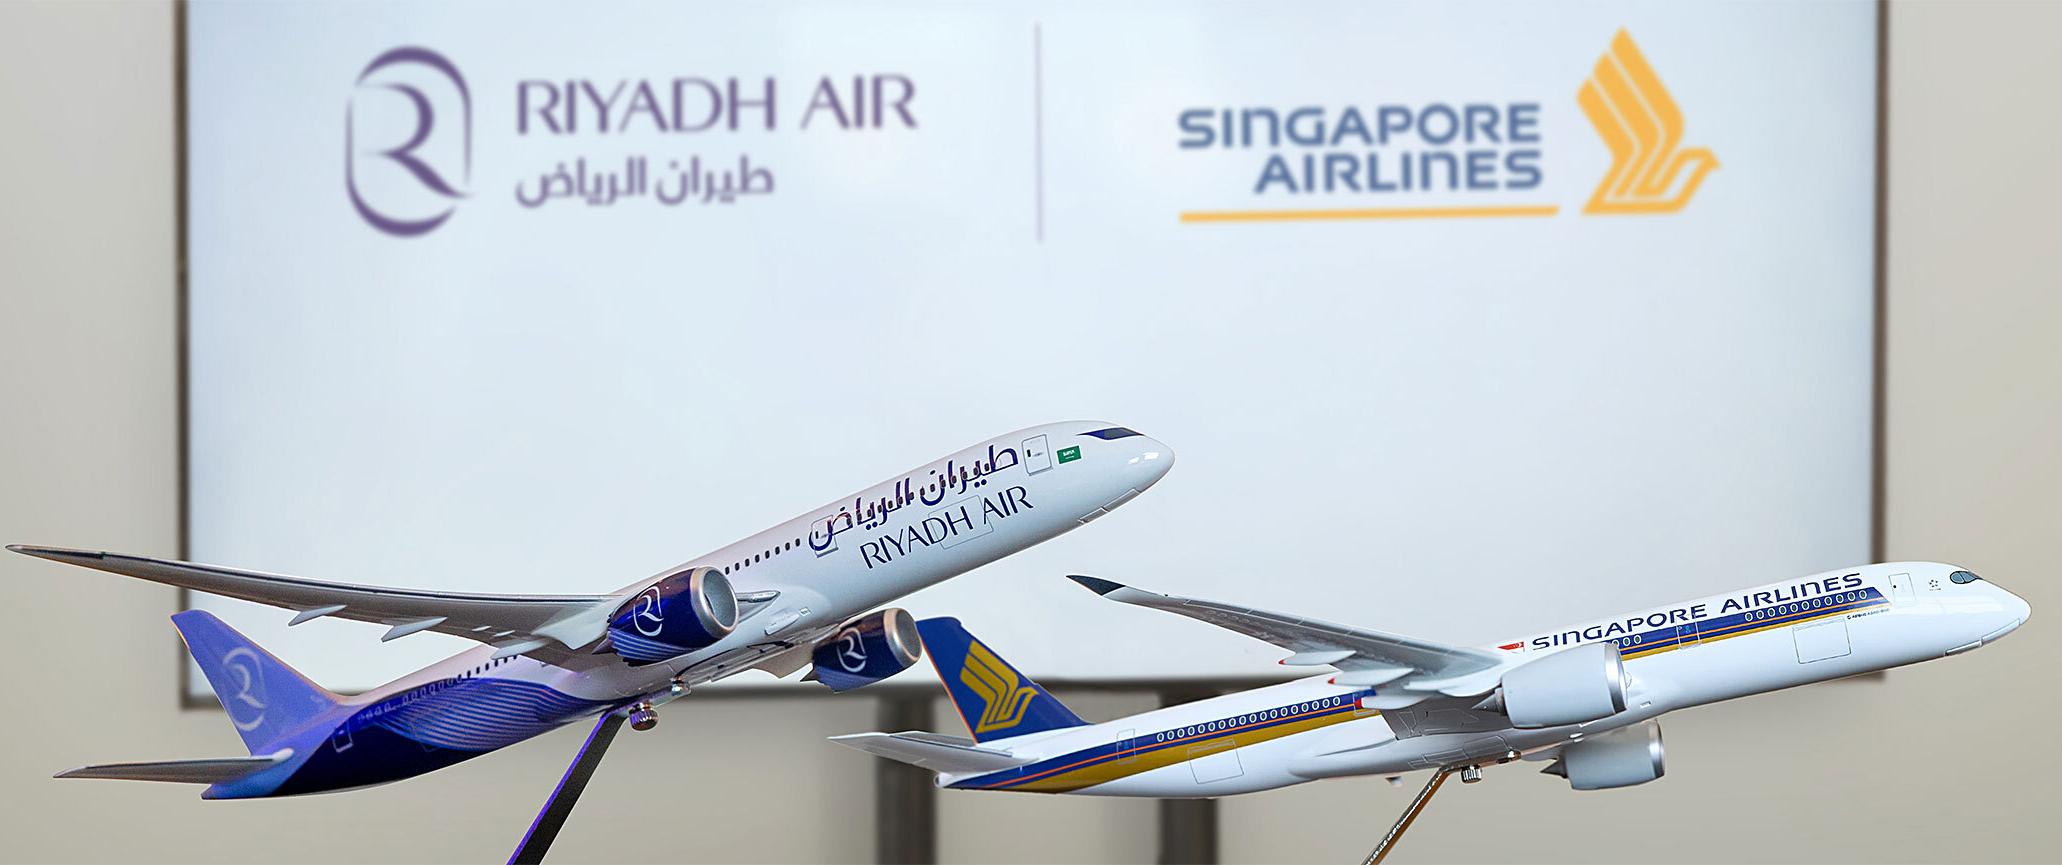 riyadh air Singapore models